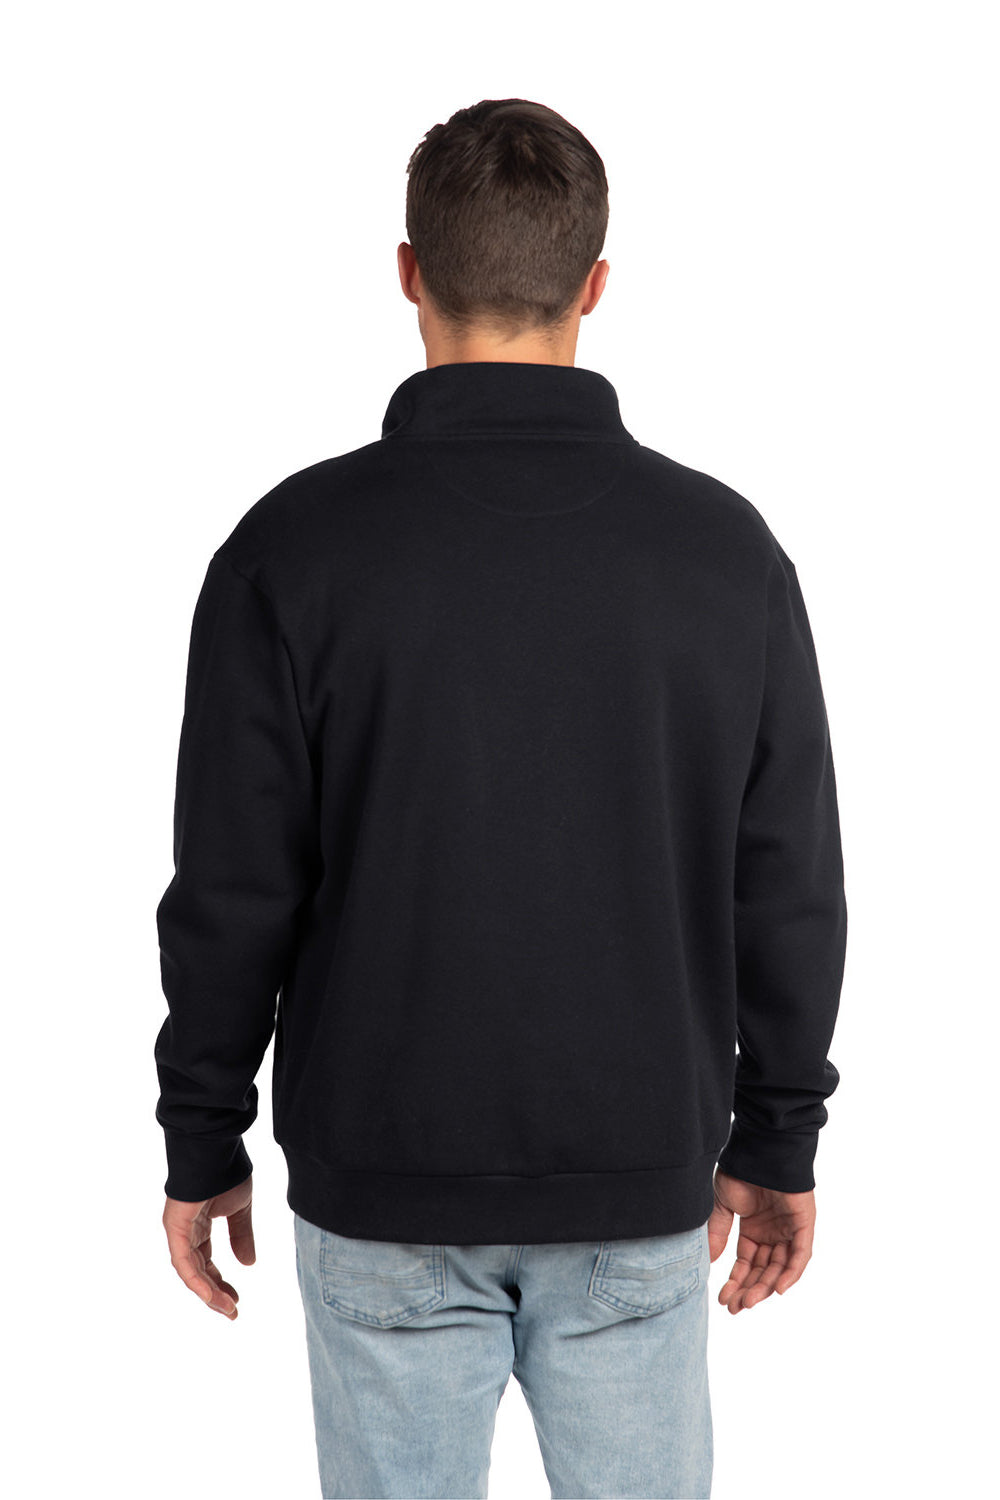 Next Level 9643 Mens Fleece 1/4 Zip Sweatshirt Black Back